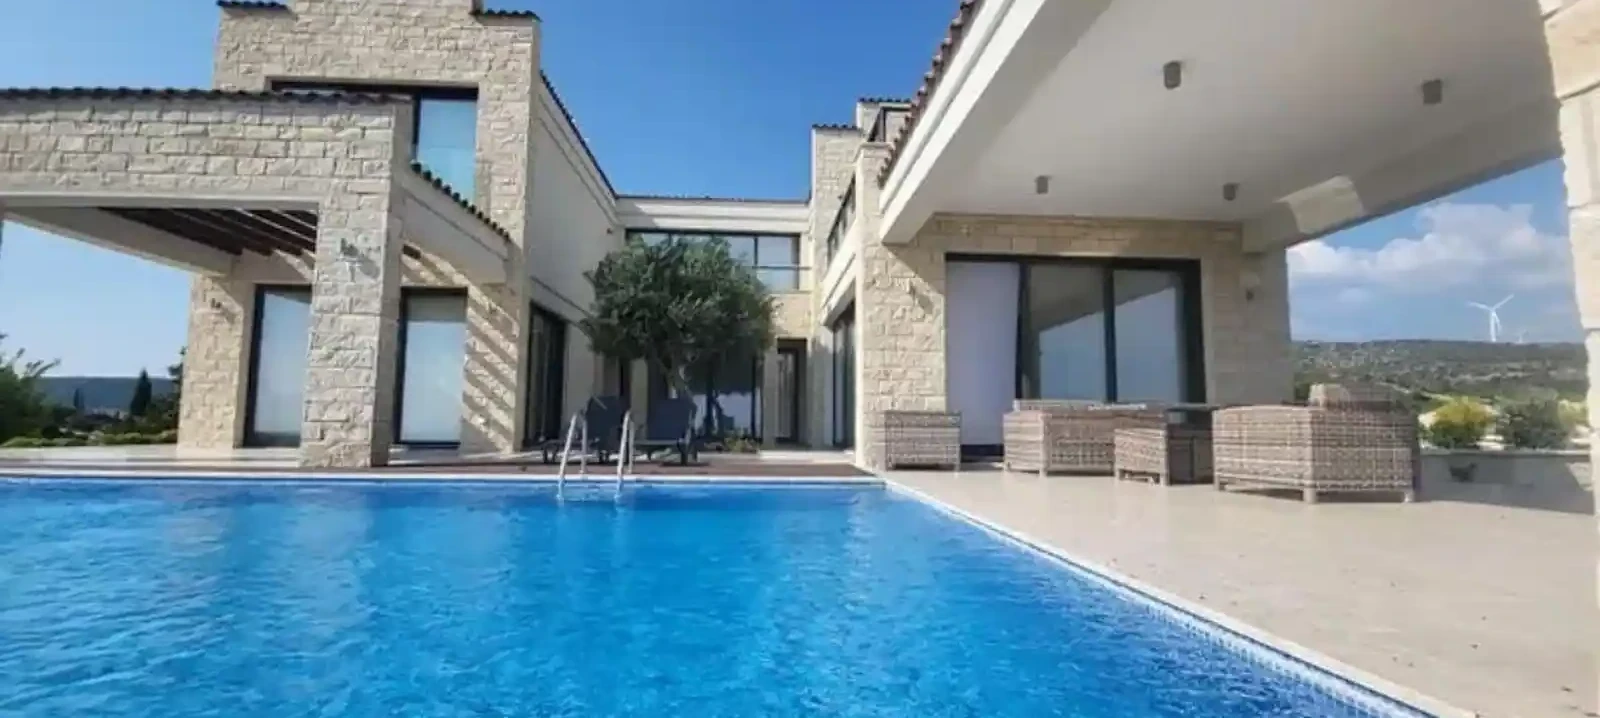 5-bedroom villa to rent €6.000, image 1